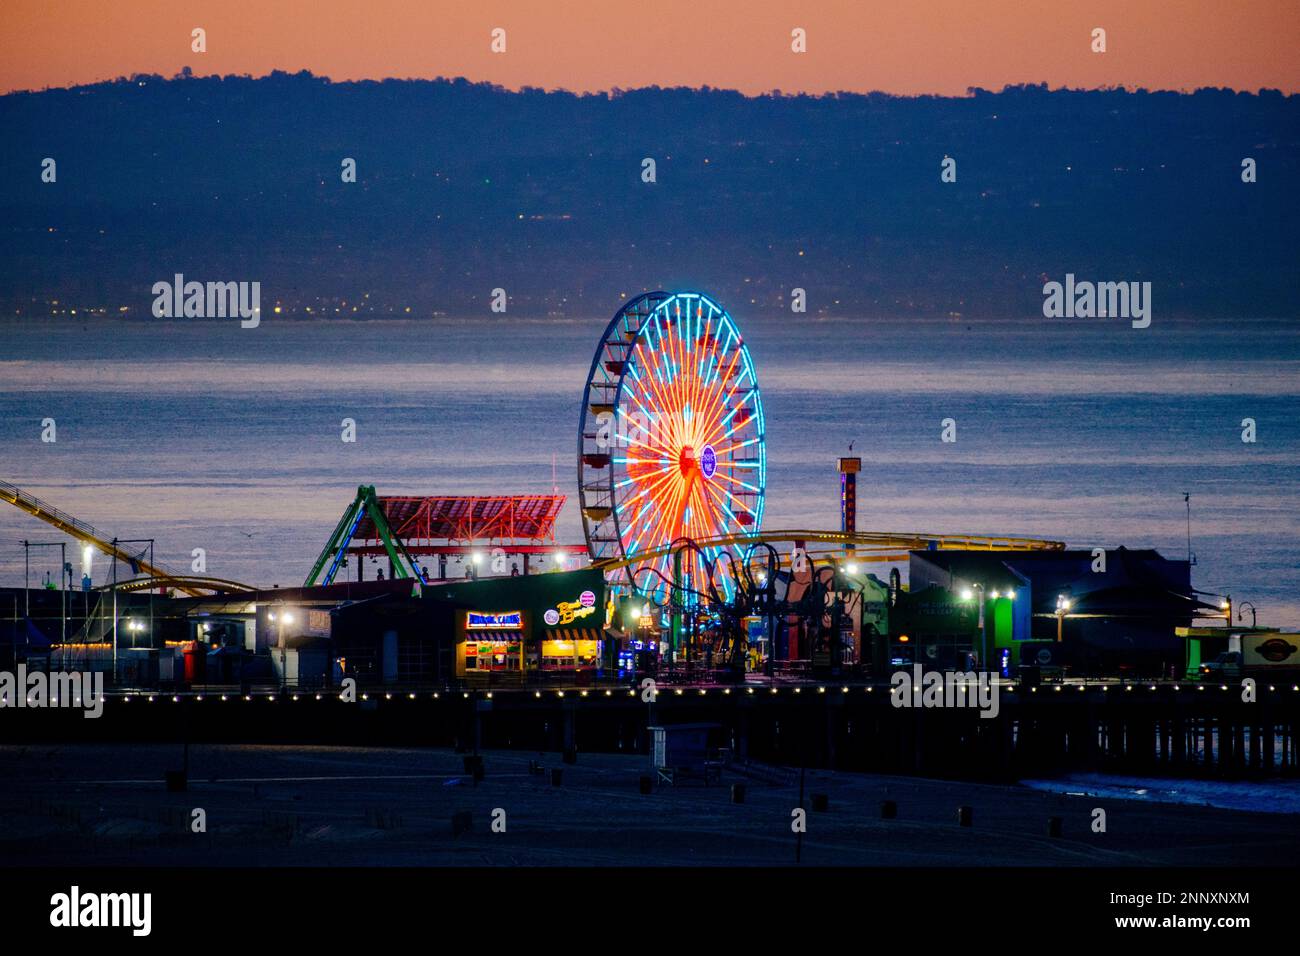 Grande roue illuminée au coucher du soleil, Santa Monica, Californie, États-Unis Banque D'Images